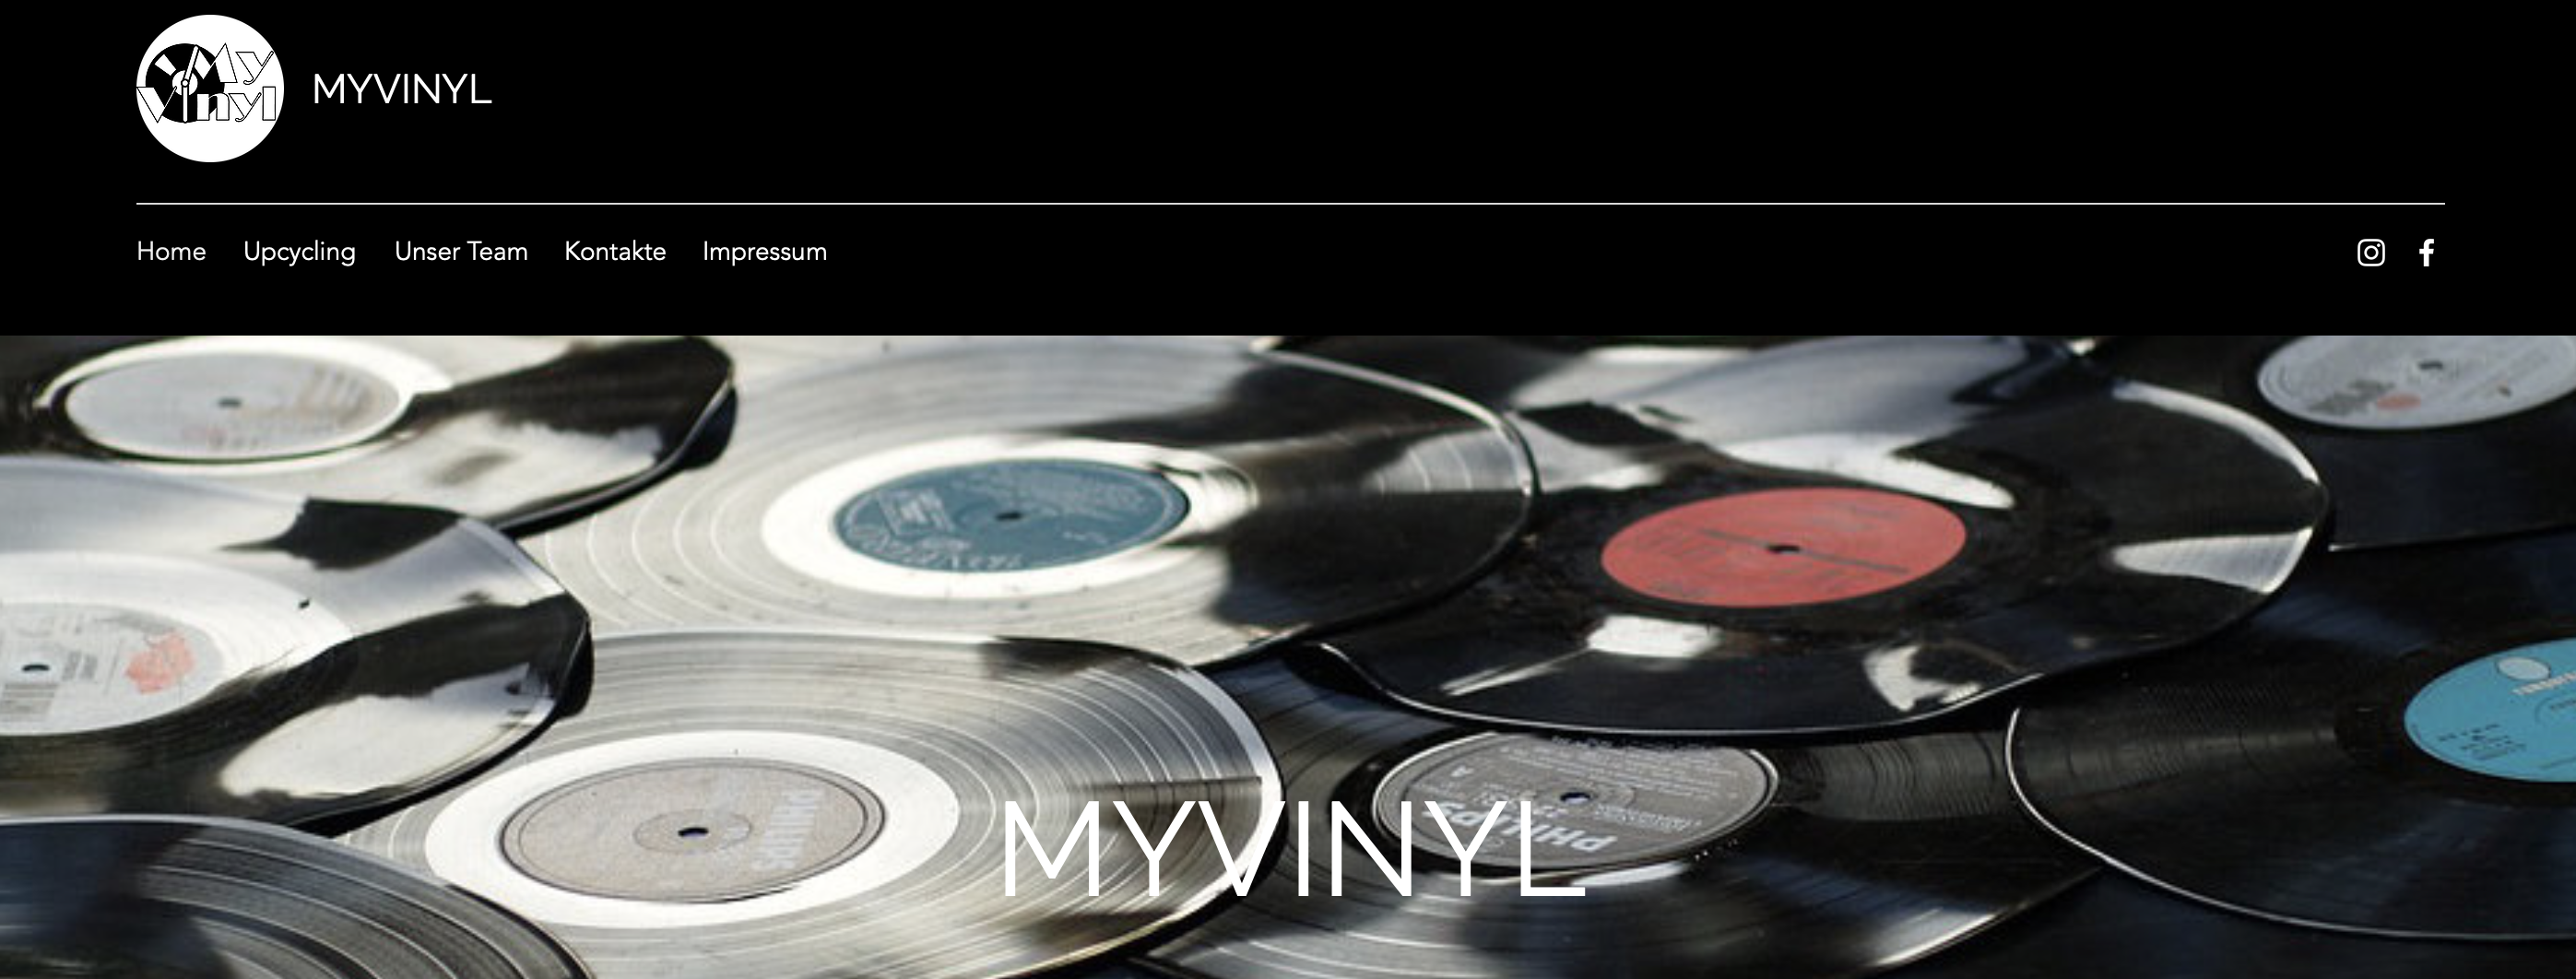 Gründervilla Programm Juni 2019 - My Vinyl - neue Webseite